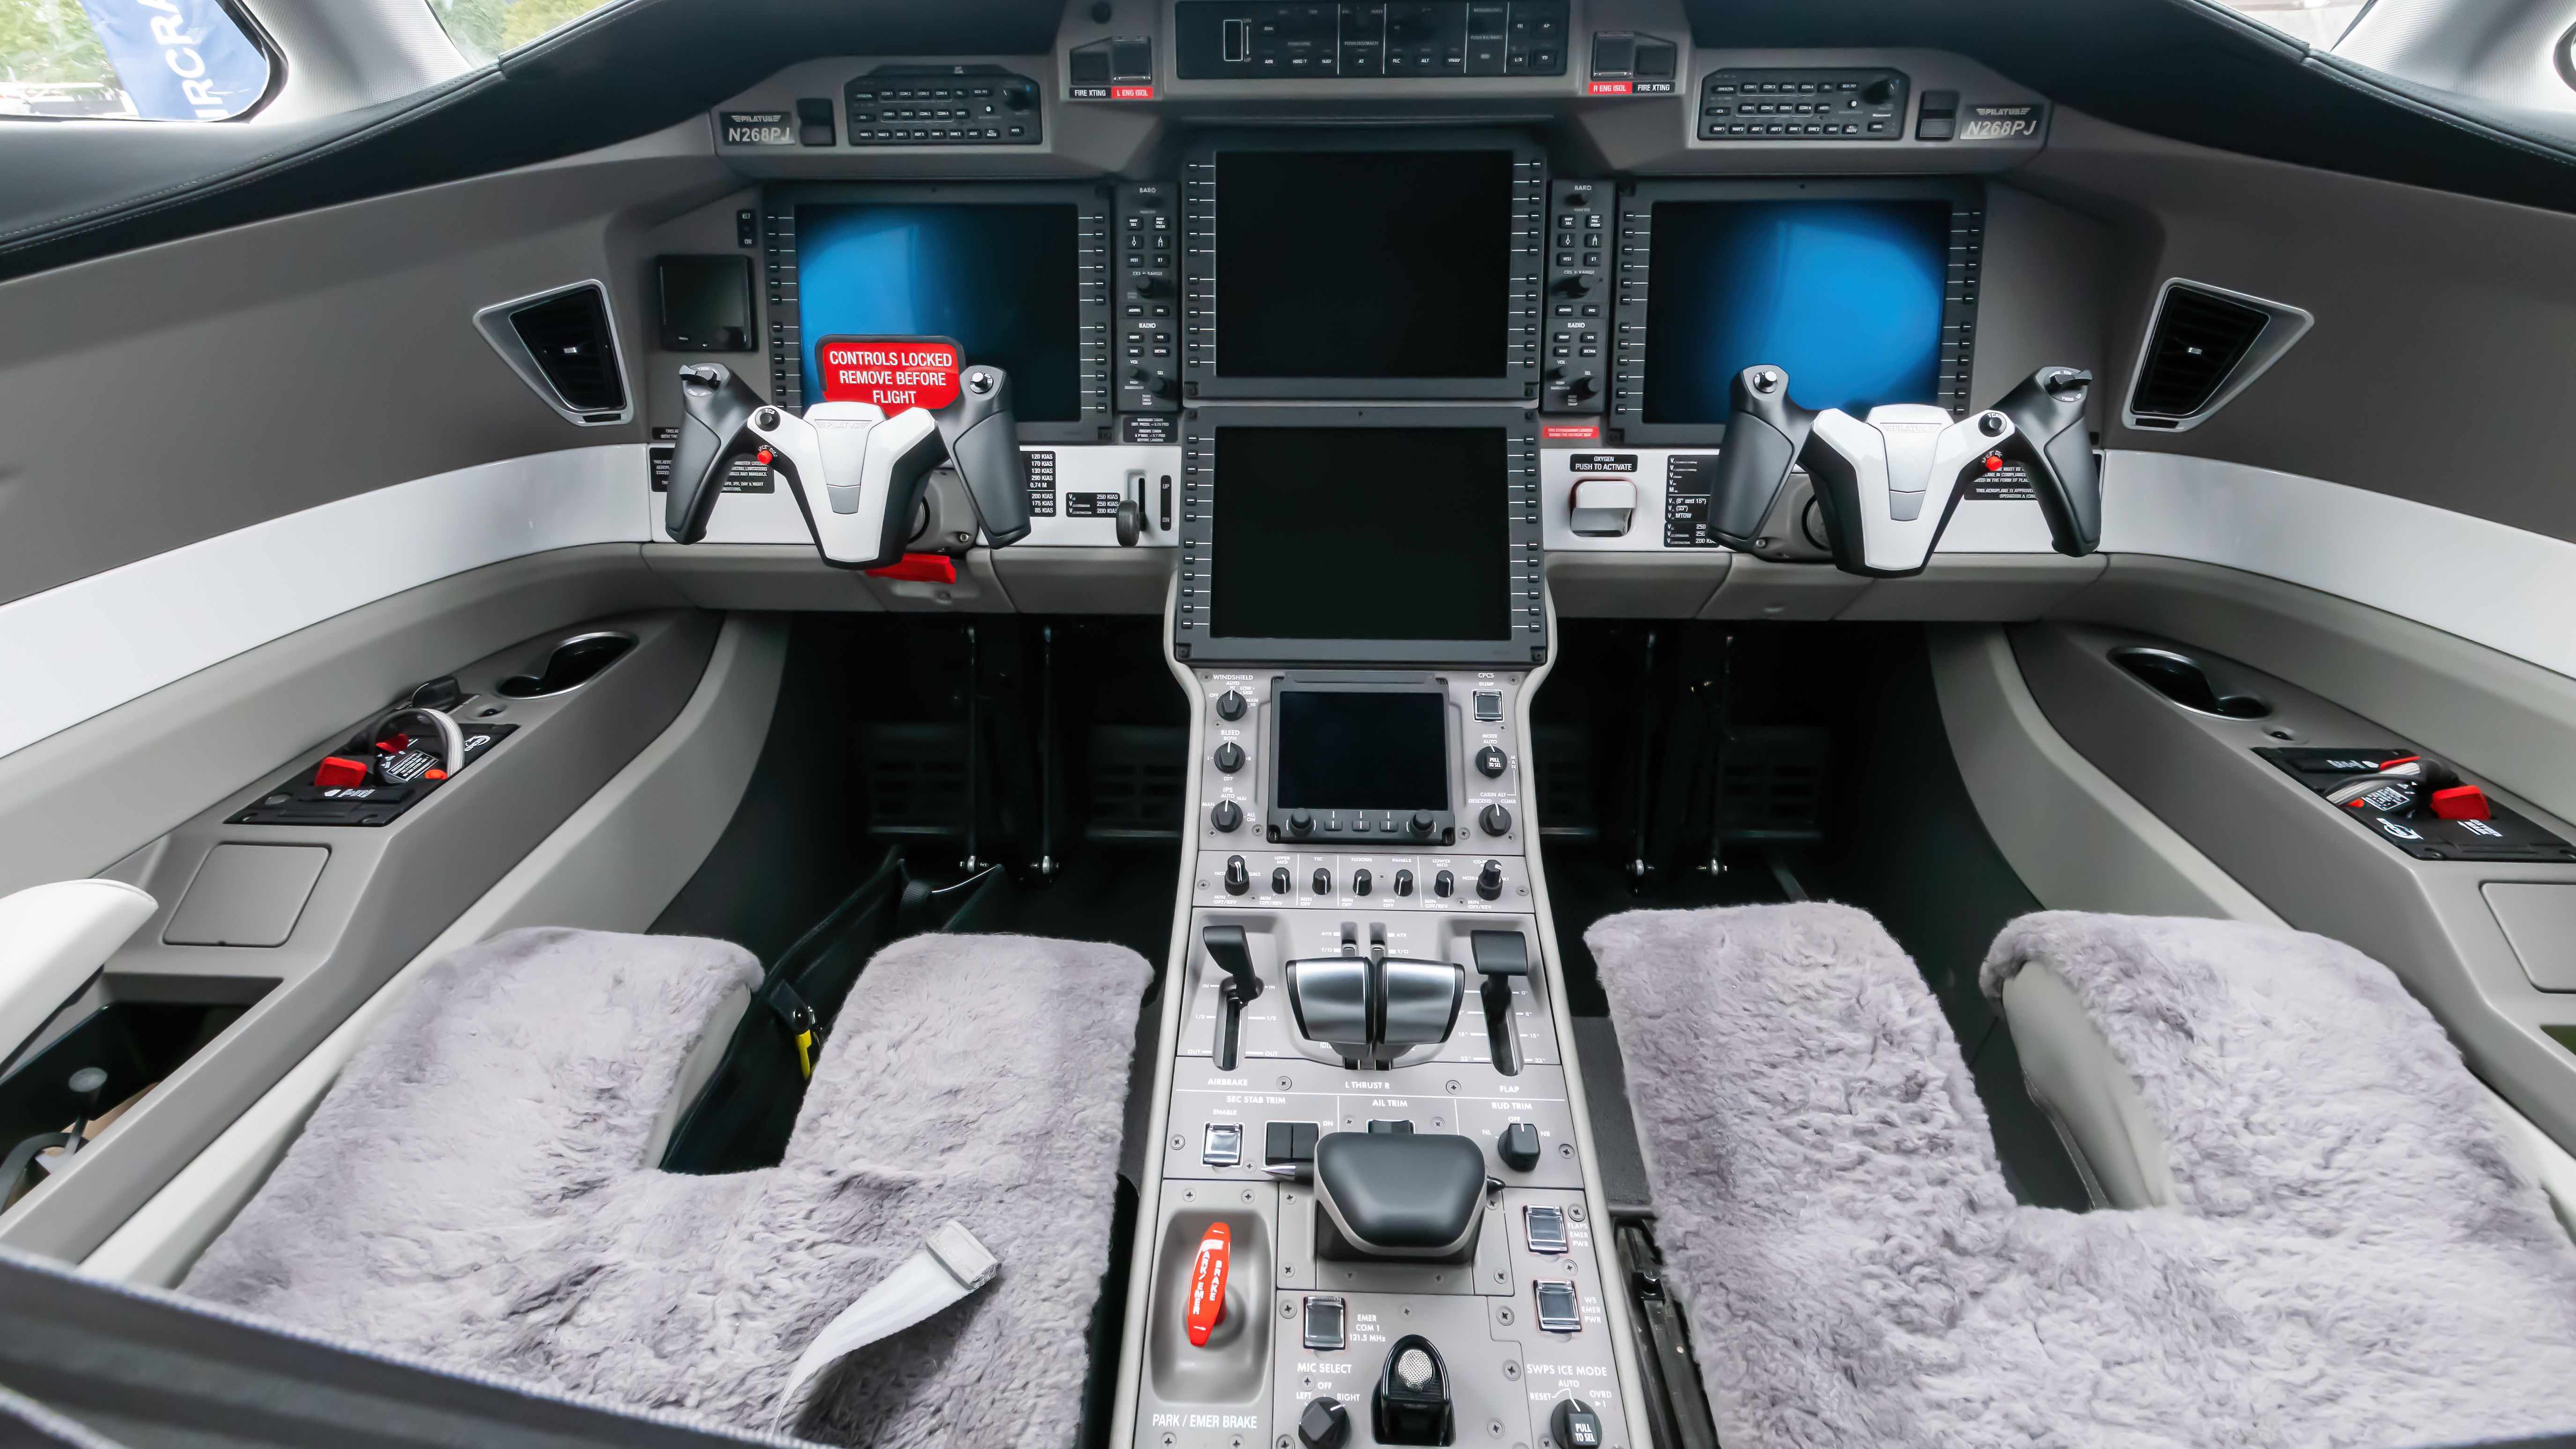 Pilatus PC-24 Cockpit in 16:9